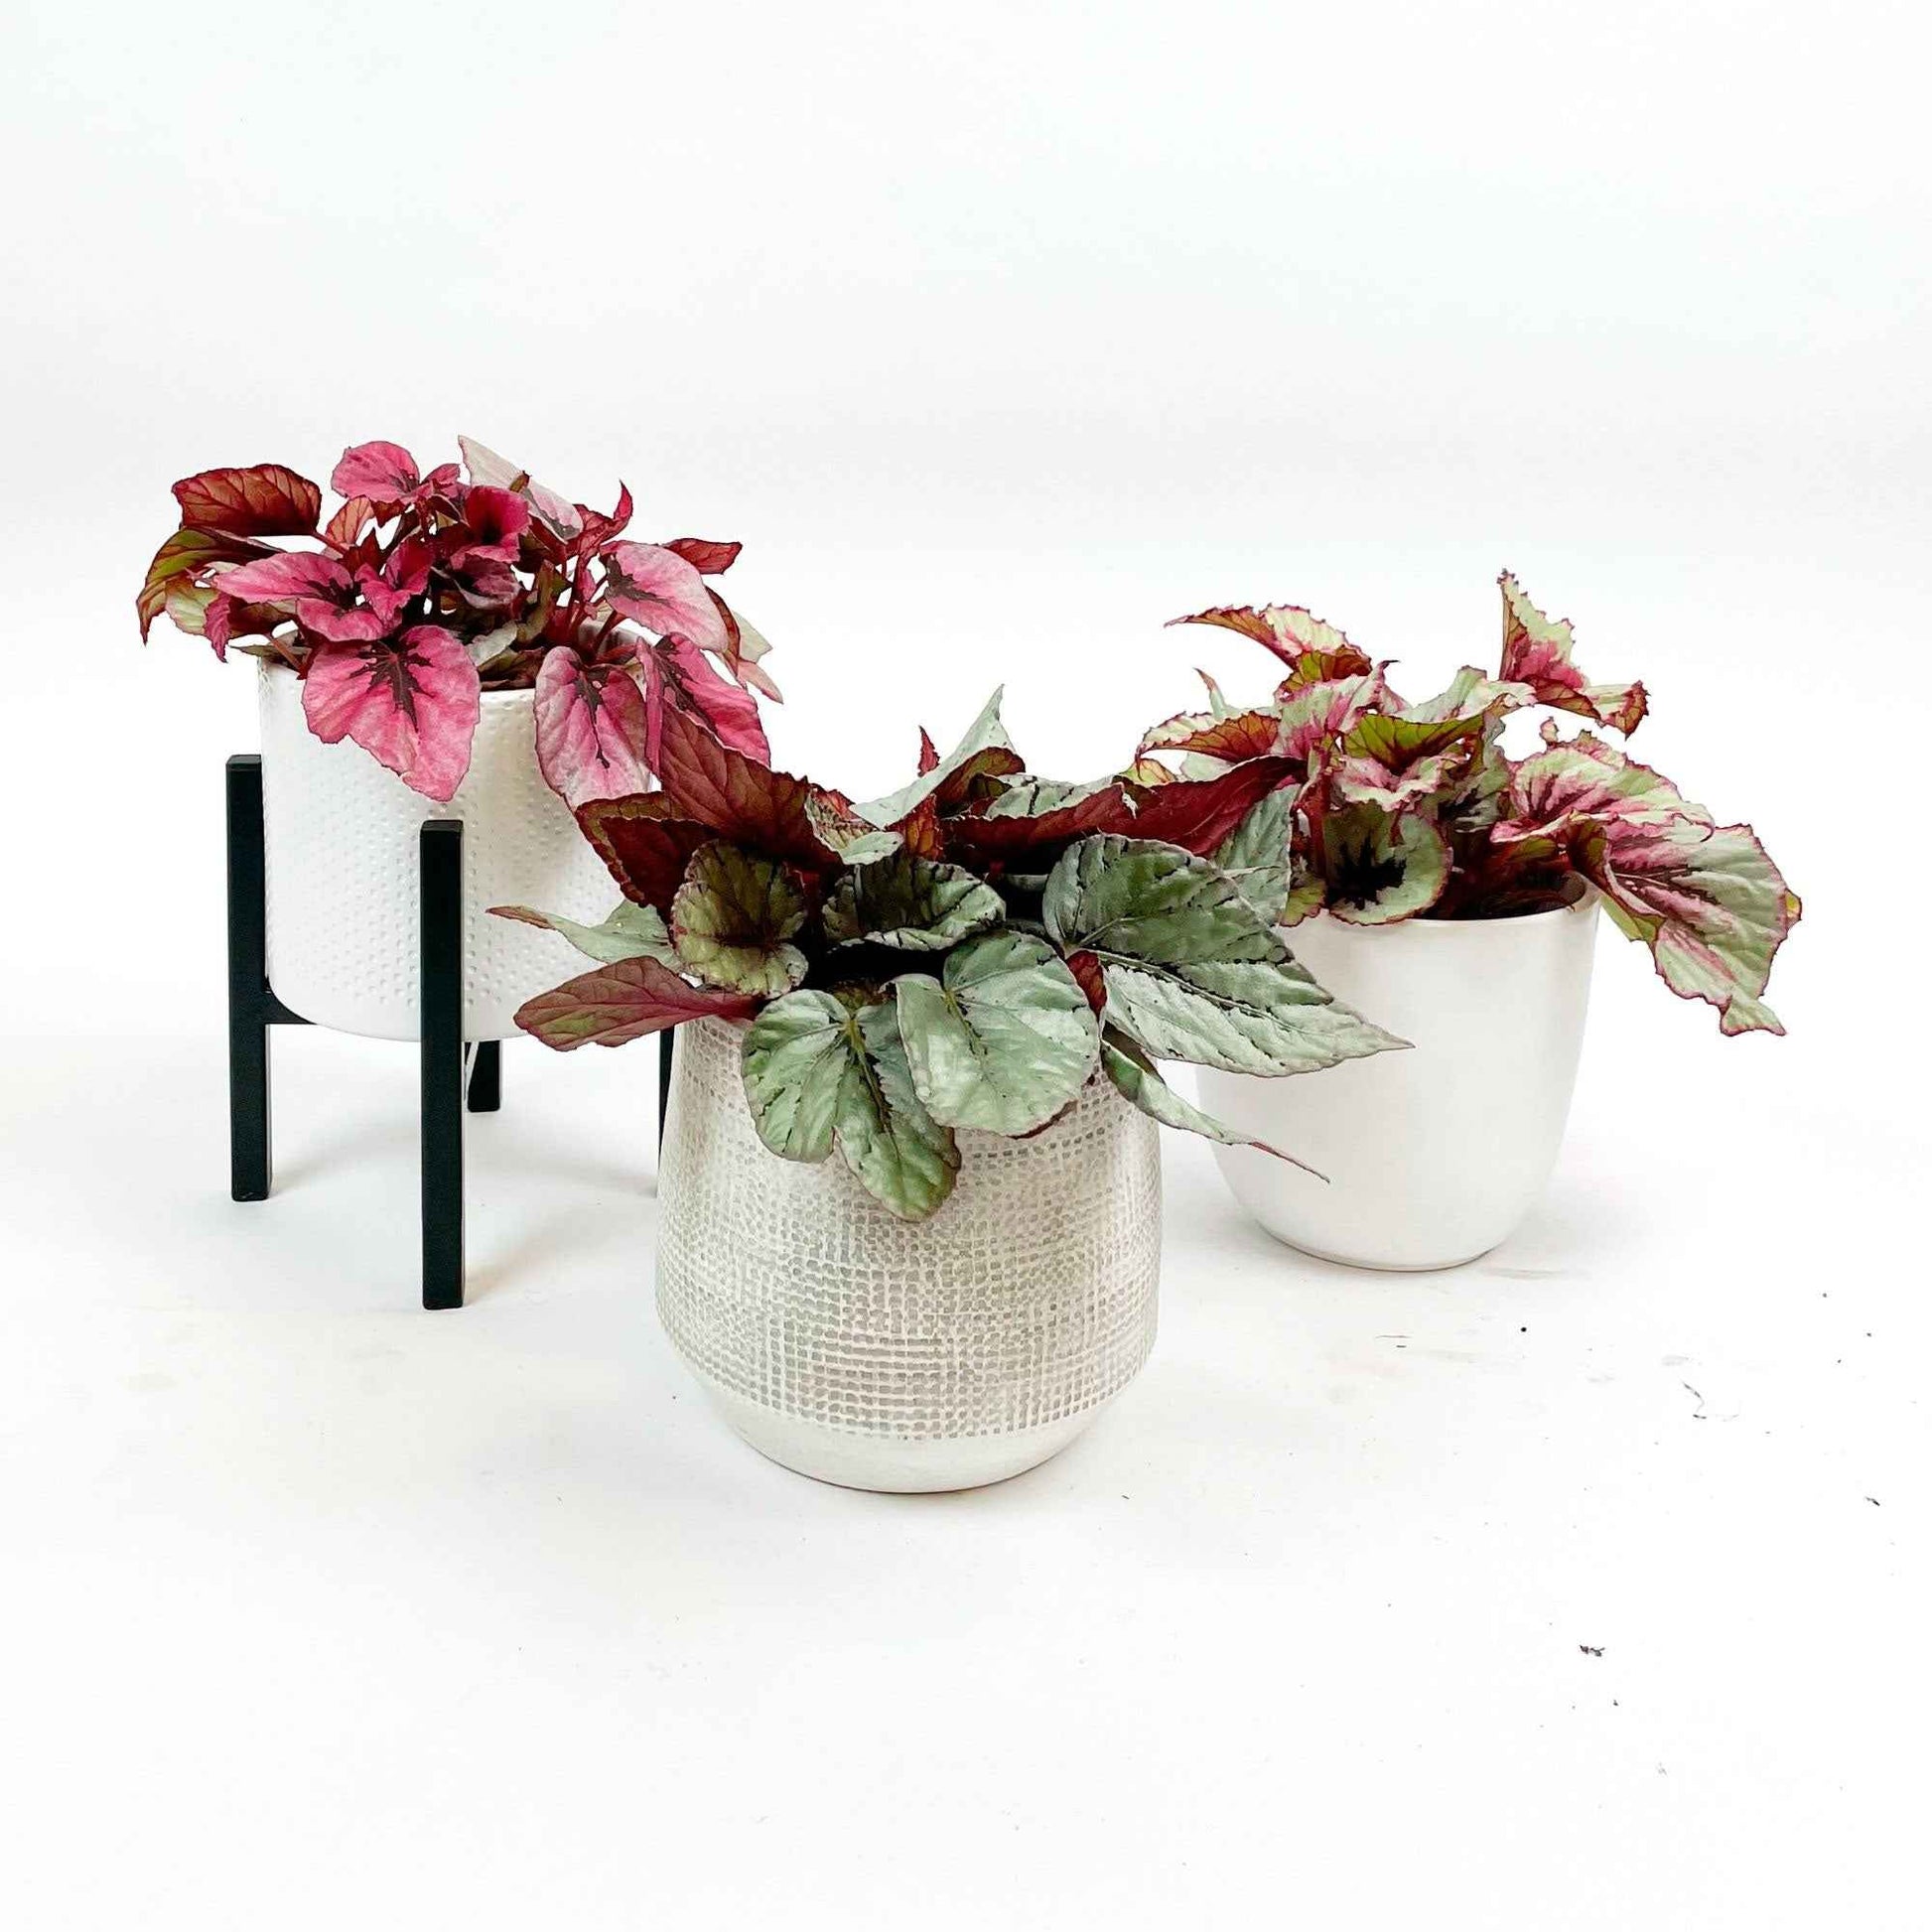 3x Bégonia Begonia - Mélange 'Bégonias Bright' avec cache-pots - Plantes d'intérieur : les tendances actuelles